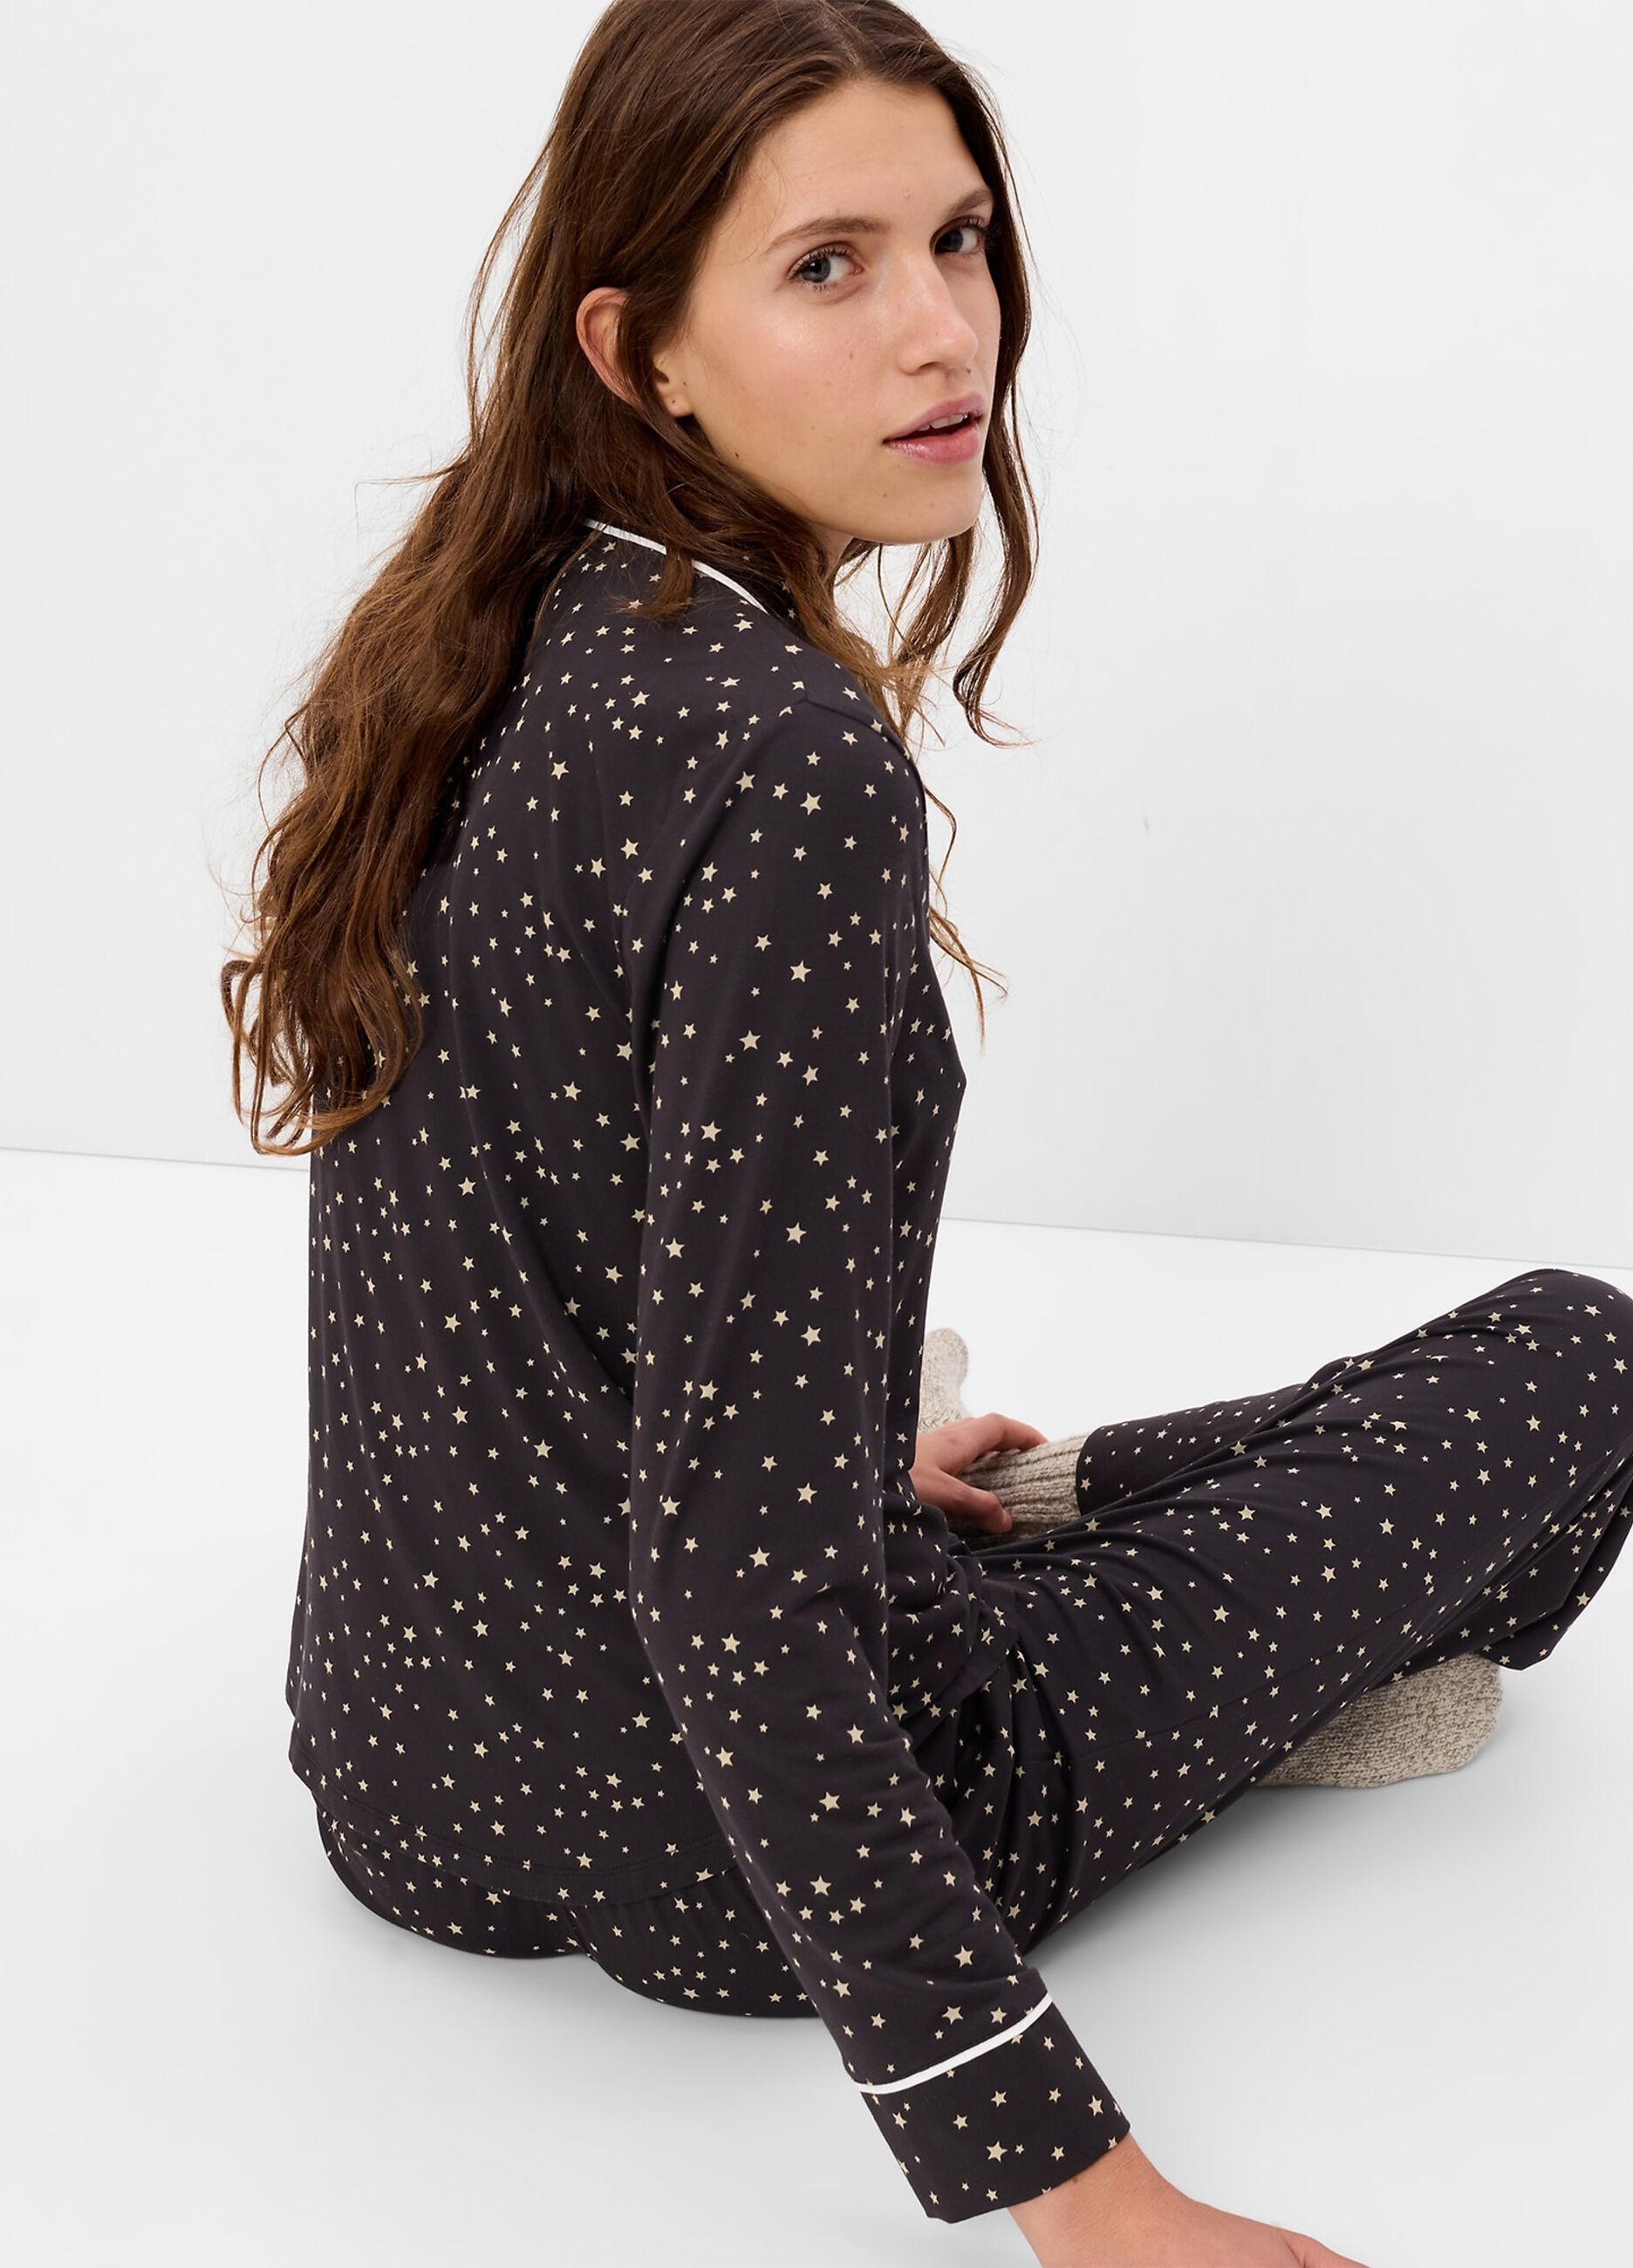 Pyjama top shirt with star print